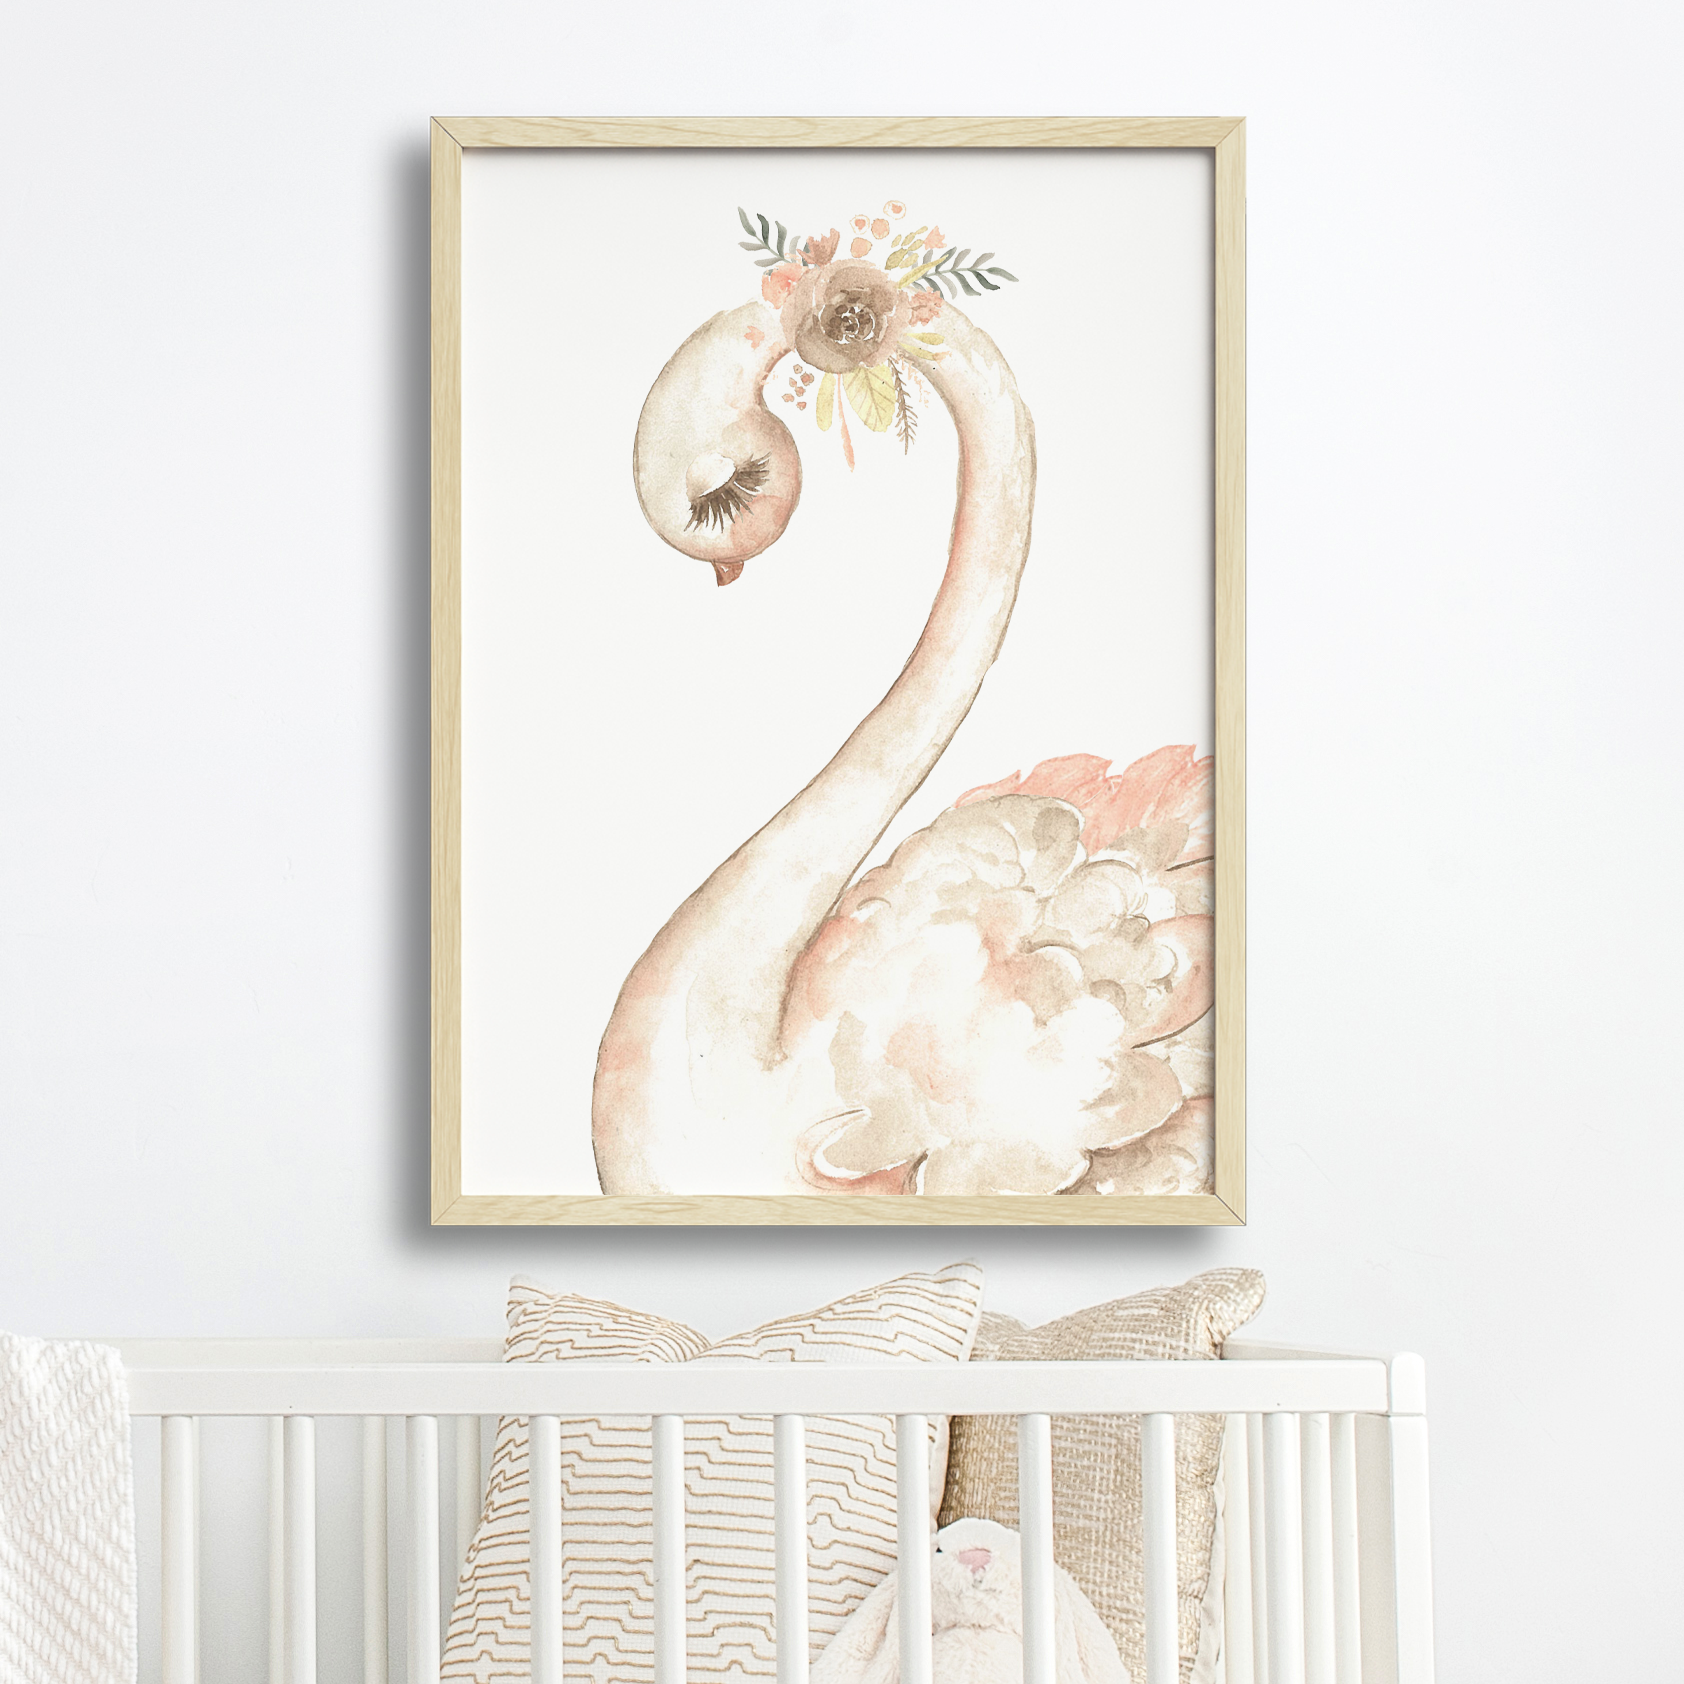 Swan Print